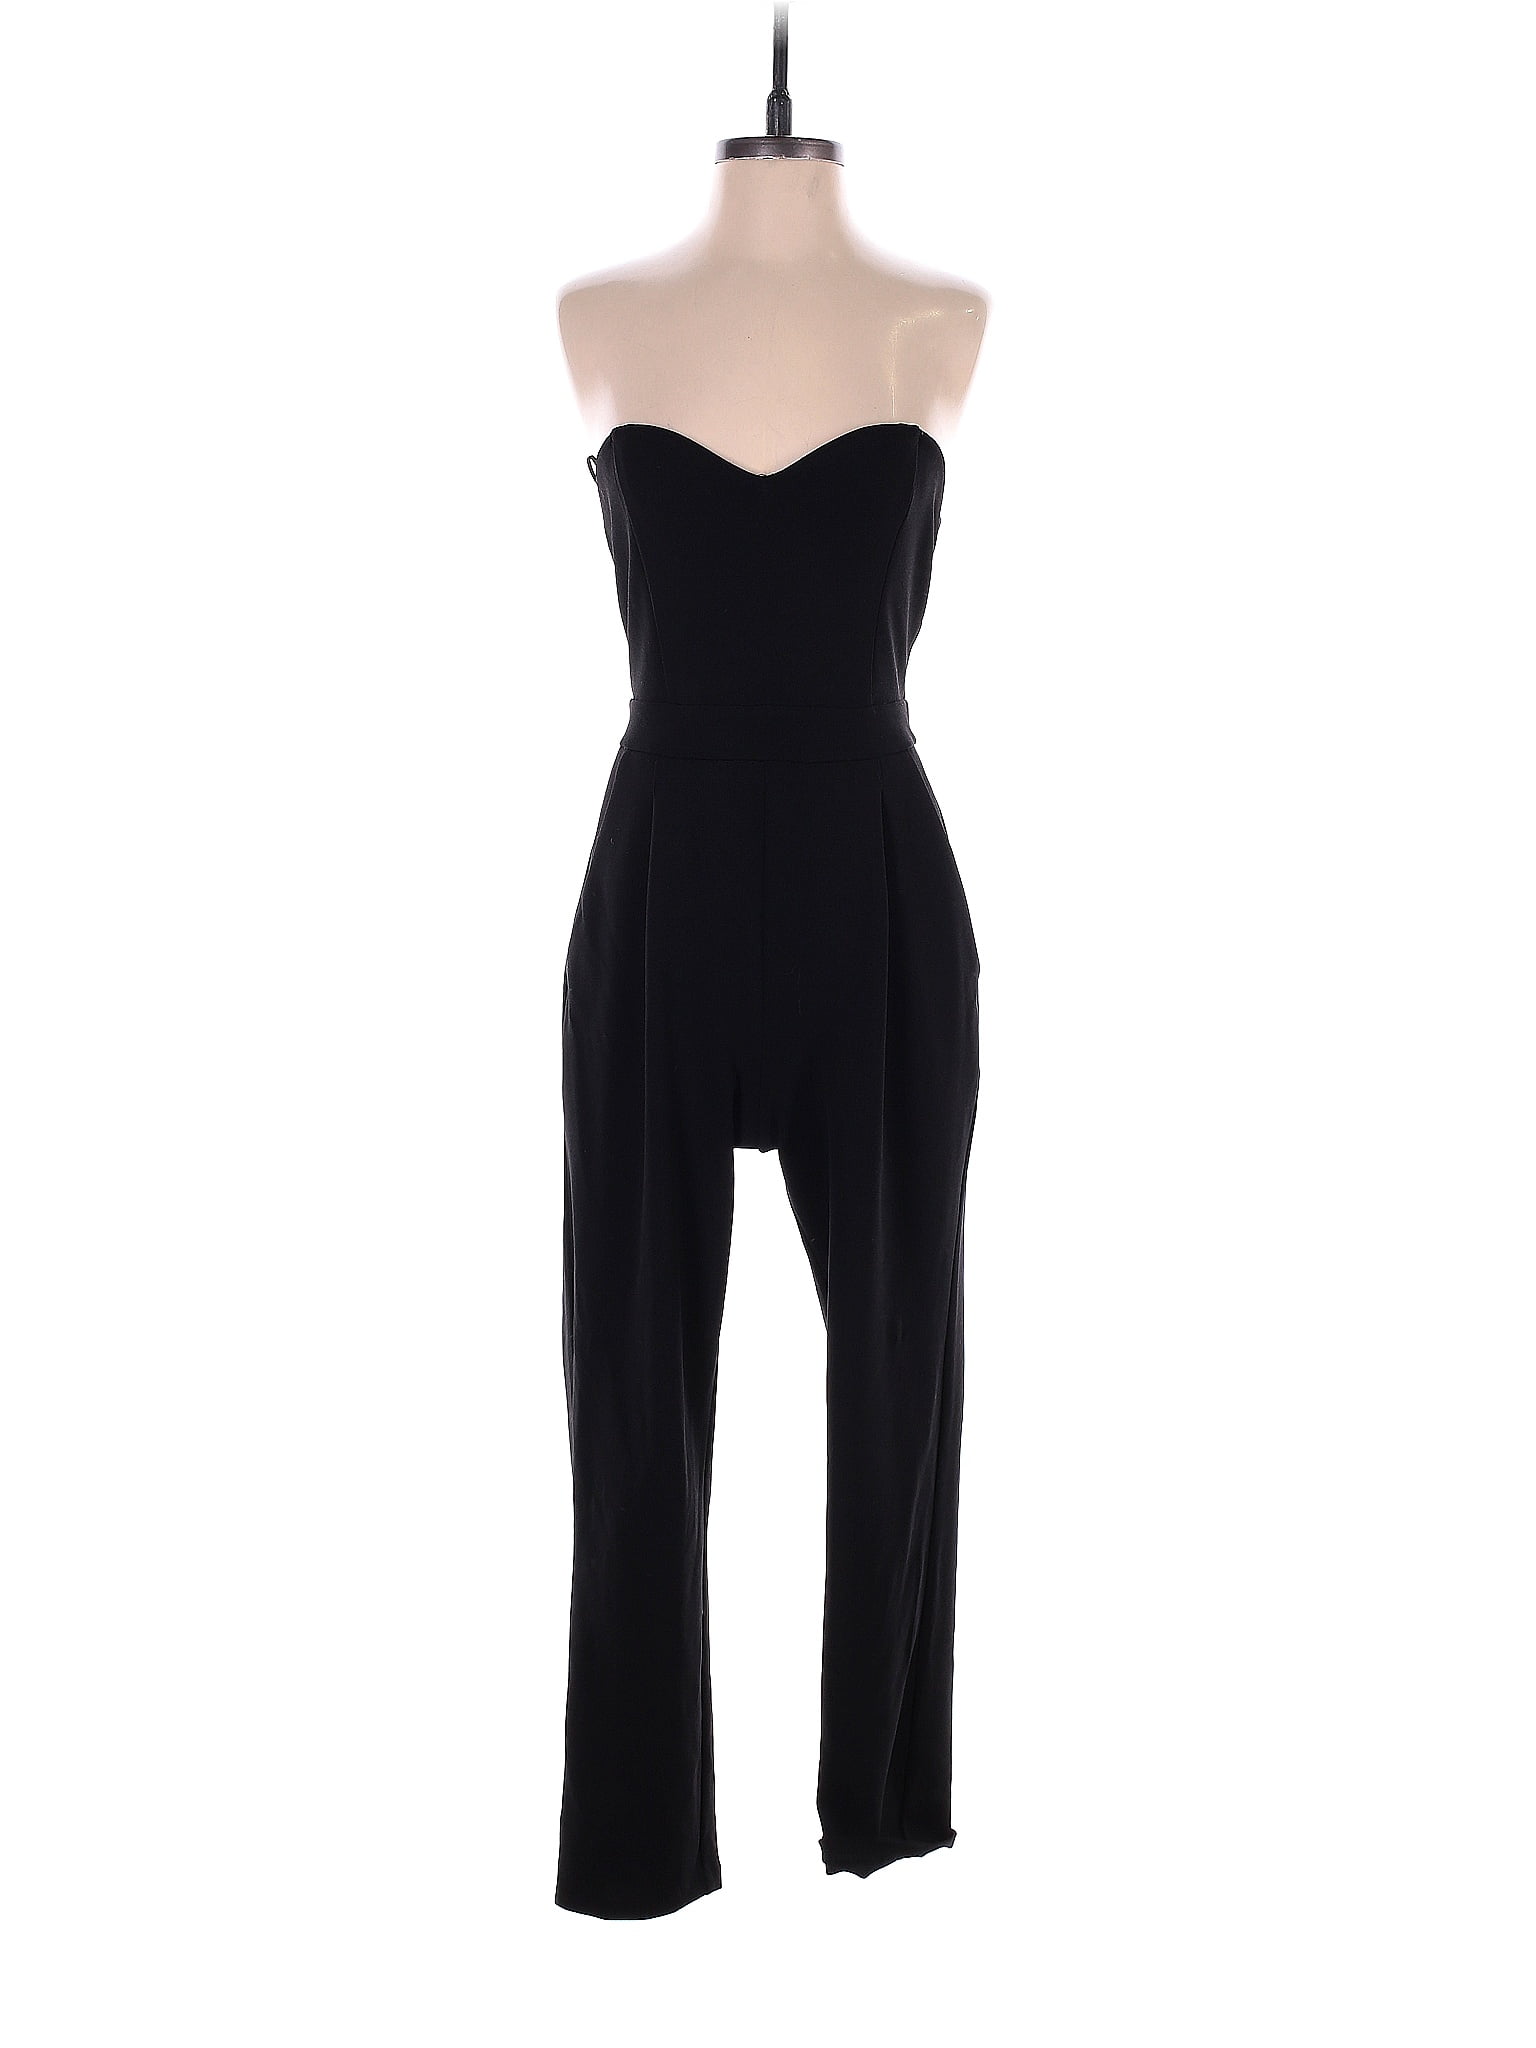 Express Solid Black Jumpsuit Size 4 - 70% off | thredUP